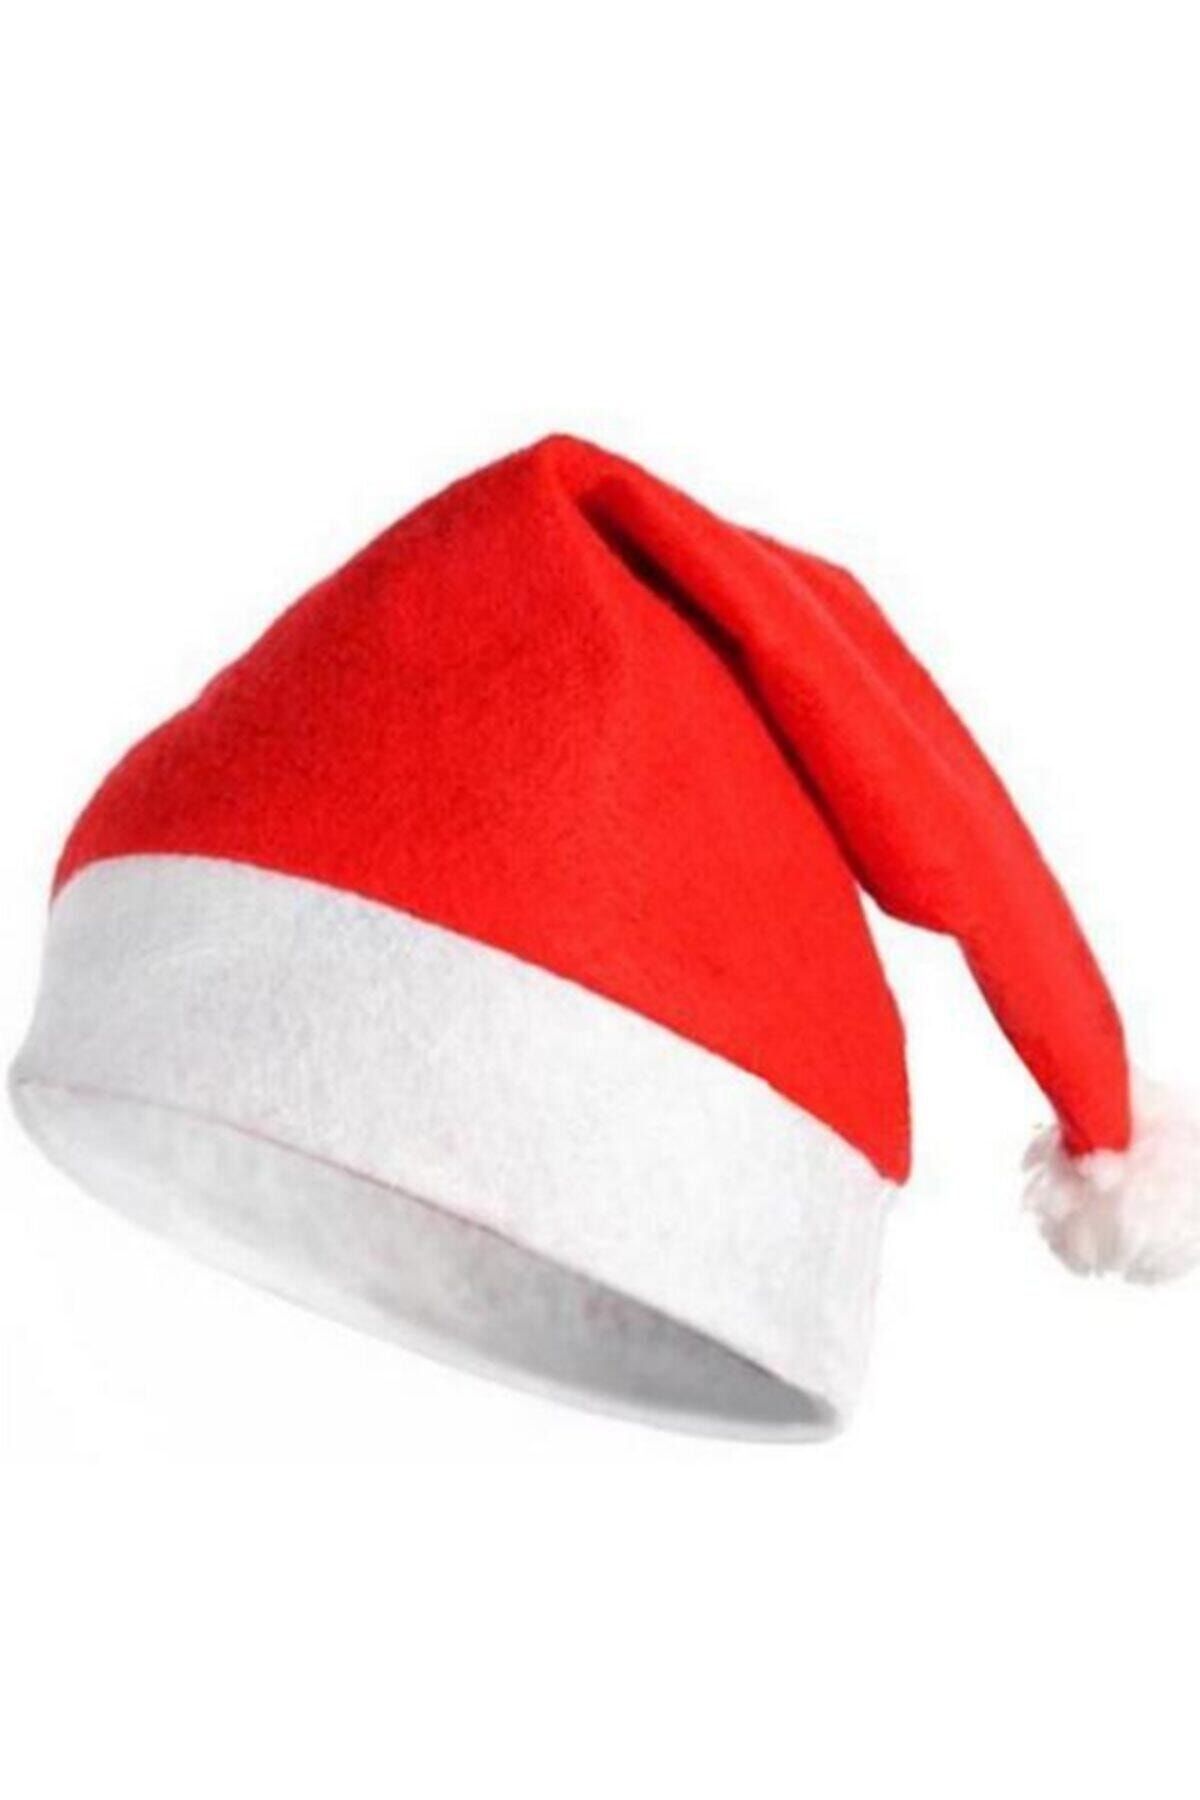 Alaaddinin Sihirli Taşları Yılbaşı Noel Şapkası Her Yaşa Uygun Ve Esnek A Kalite Sınırsız Stok